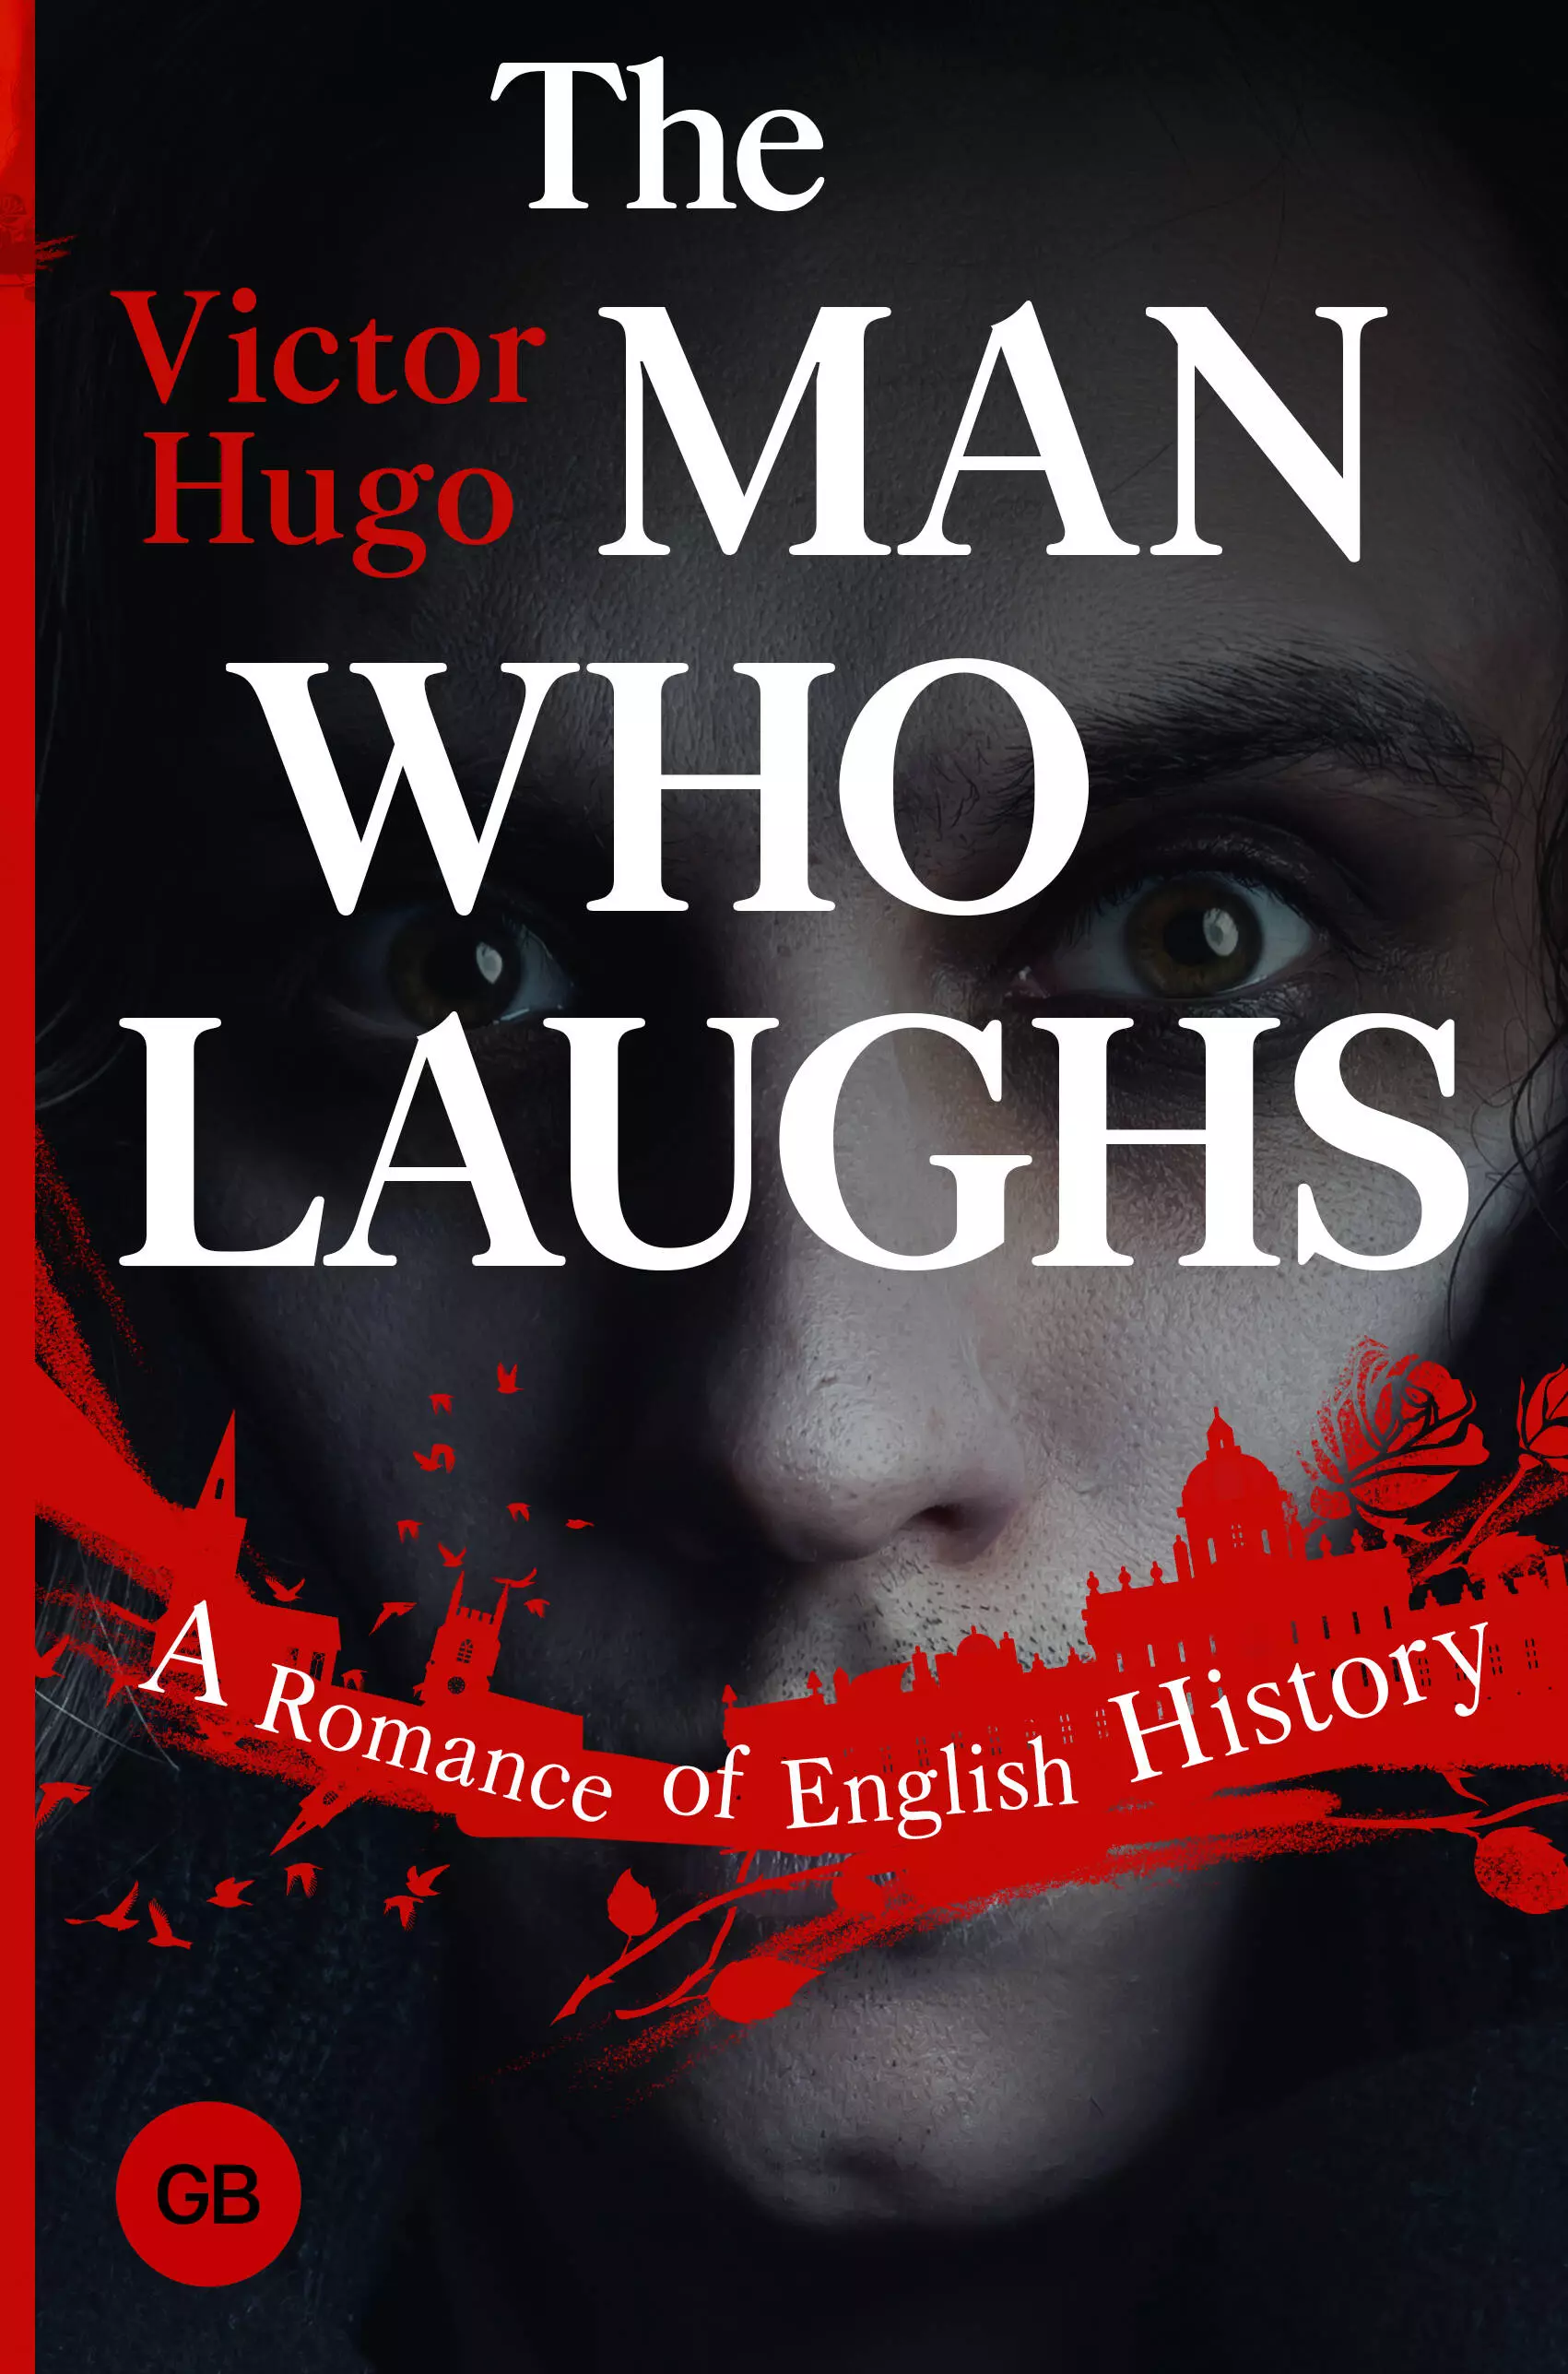 Гюго Виктор Мари The Man Who Laughs: A Romance of English History браун адам карли адлер карандаш надежды невыдуманная история о том как простой человек может изменить мир